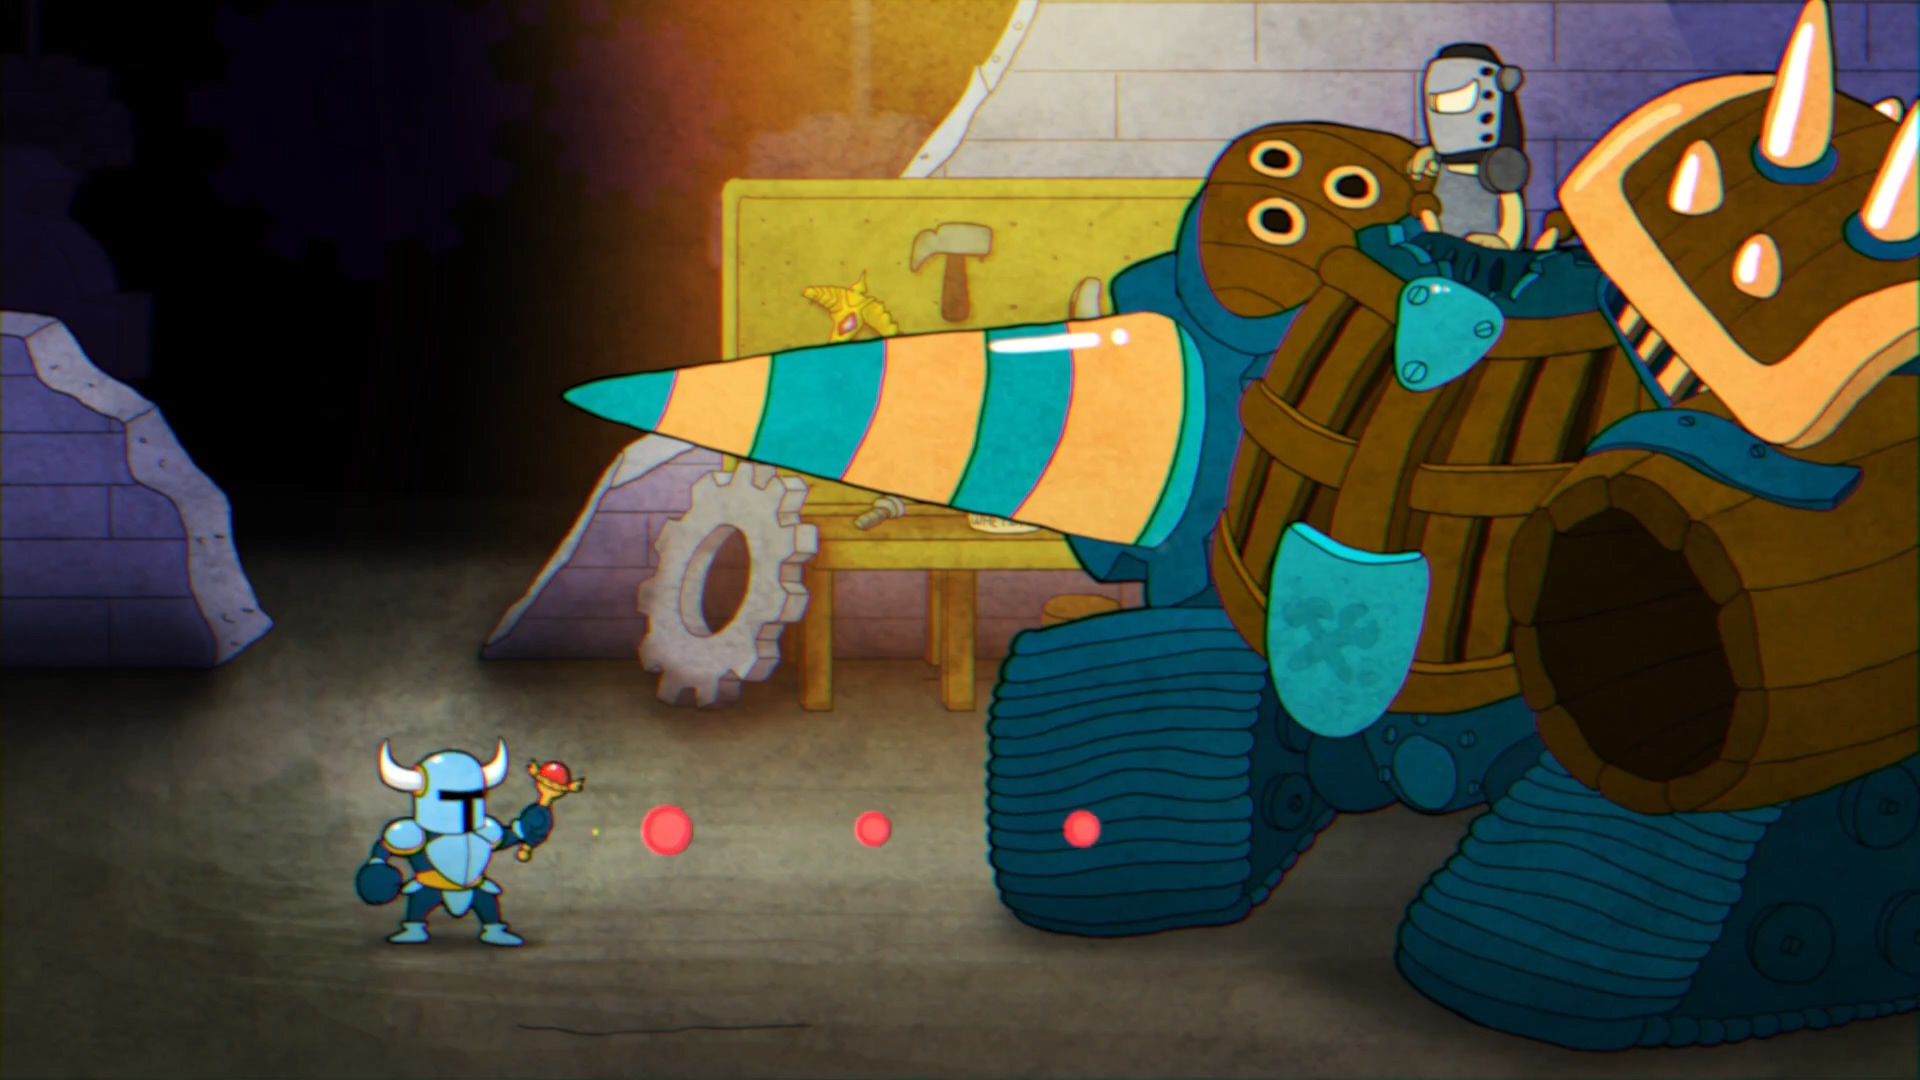 粉絲製作有愛動畫 假如《鏟子騎士》穿越到其他遊戲